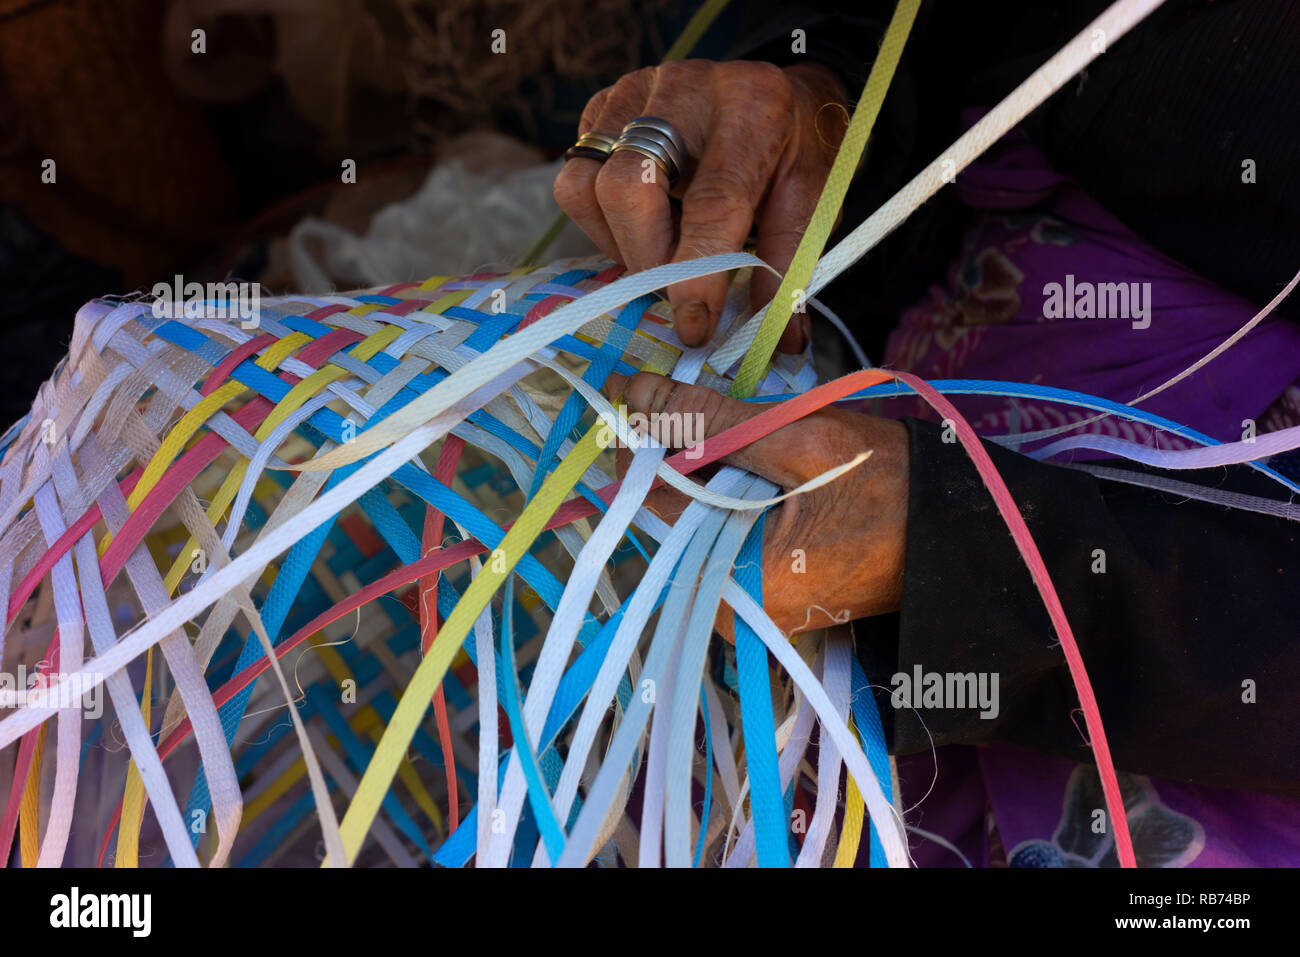 Eine ältere Frau spinnt einen Korb von zerrissen Streifen aus Kunststoff/Hessische gemacht. Stockfoto